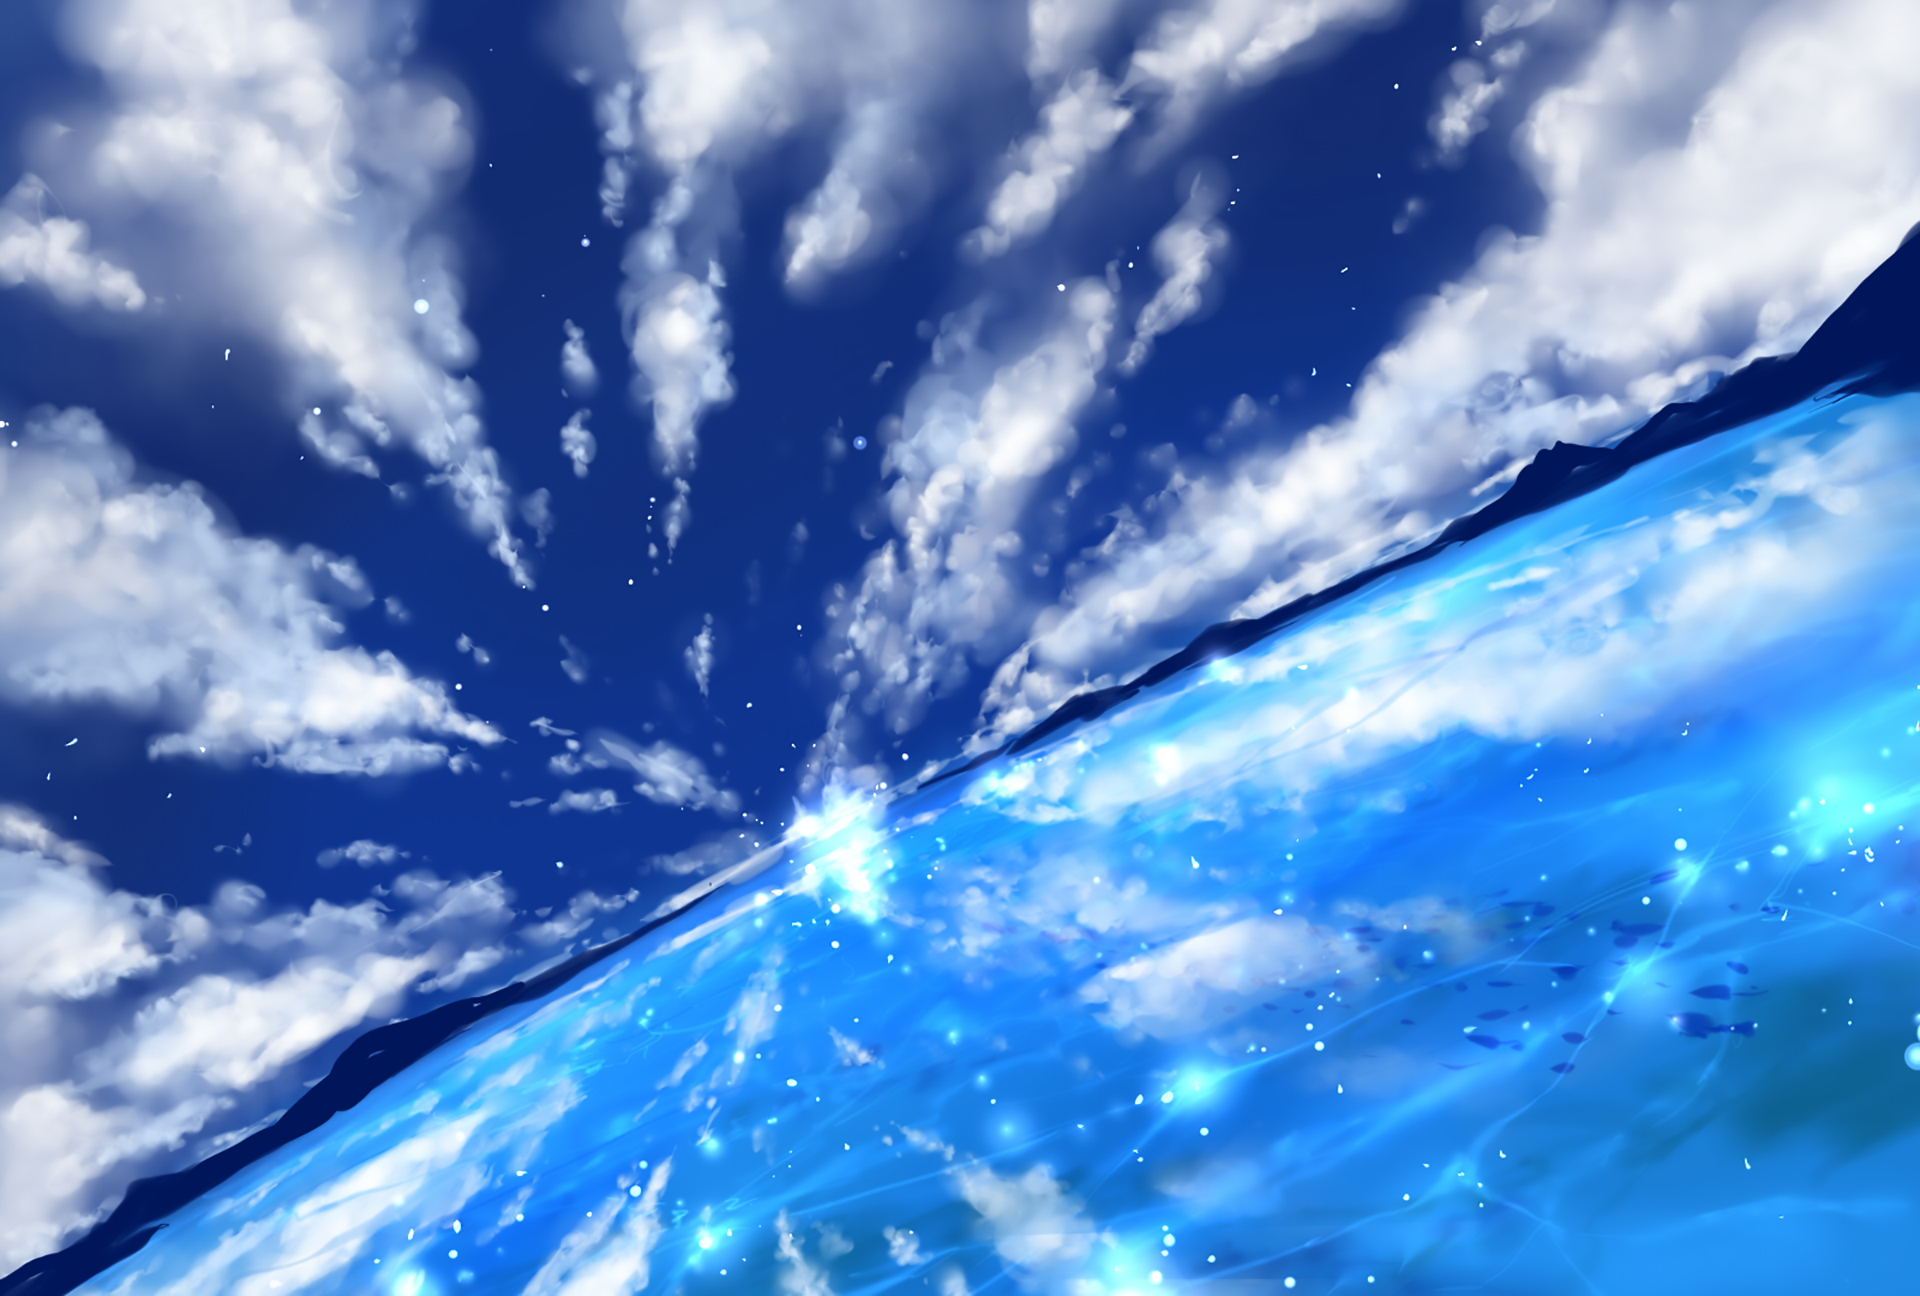 Скачать обои бесплатно Аниме, Небо, Облака, Гора, Океан, Рыба, Оригинал картинка на рабочий стол ПК